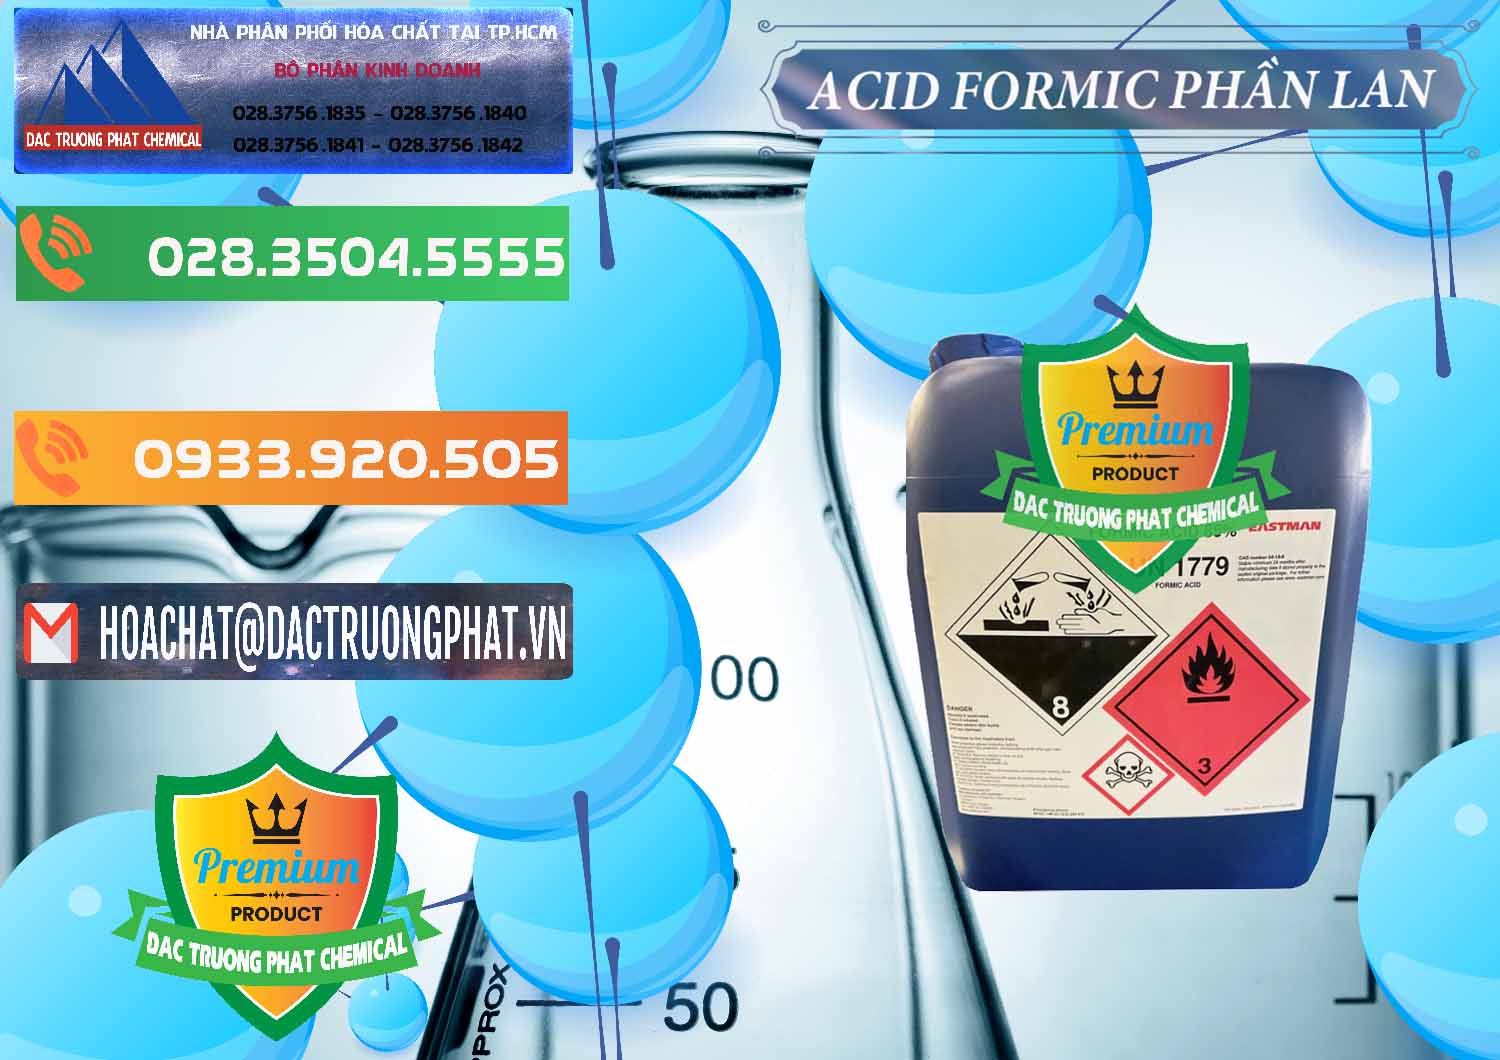 Đơn vị chuyên kinh doanh & bán Acid Formic - Axit Formic Phần Lan Finland - 0376 - Cty phân phối _ kinh doanh hóa chất tại TP.HCM - hoachatxulynuoc.com.vn